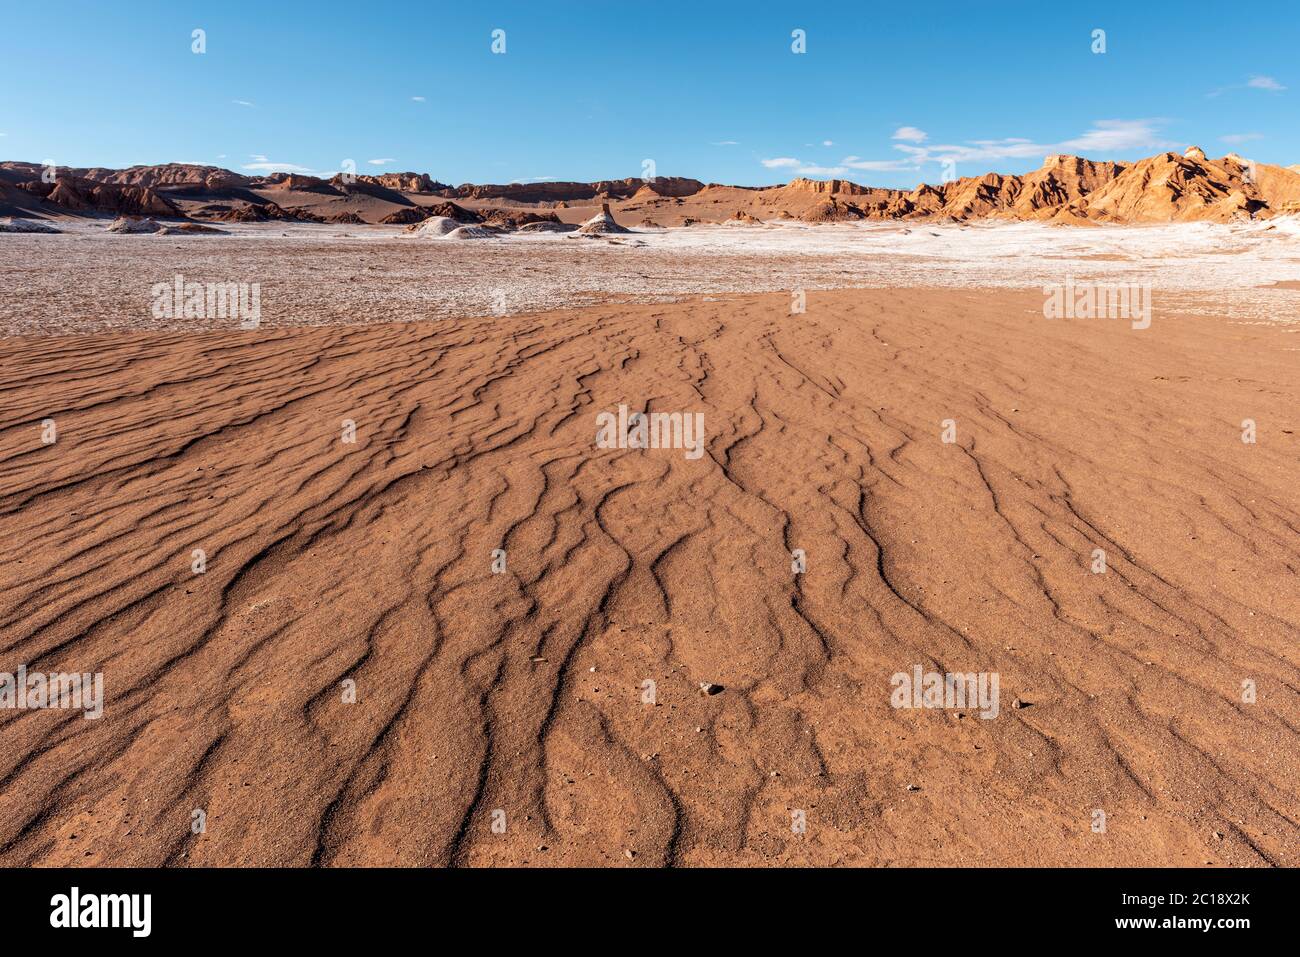 Eine trockene Flussbettslandschaft im trockenen Mondtal der trockensten Wüste der Erde, Atacama-Wüste, Chile. Stockfoto